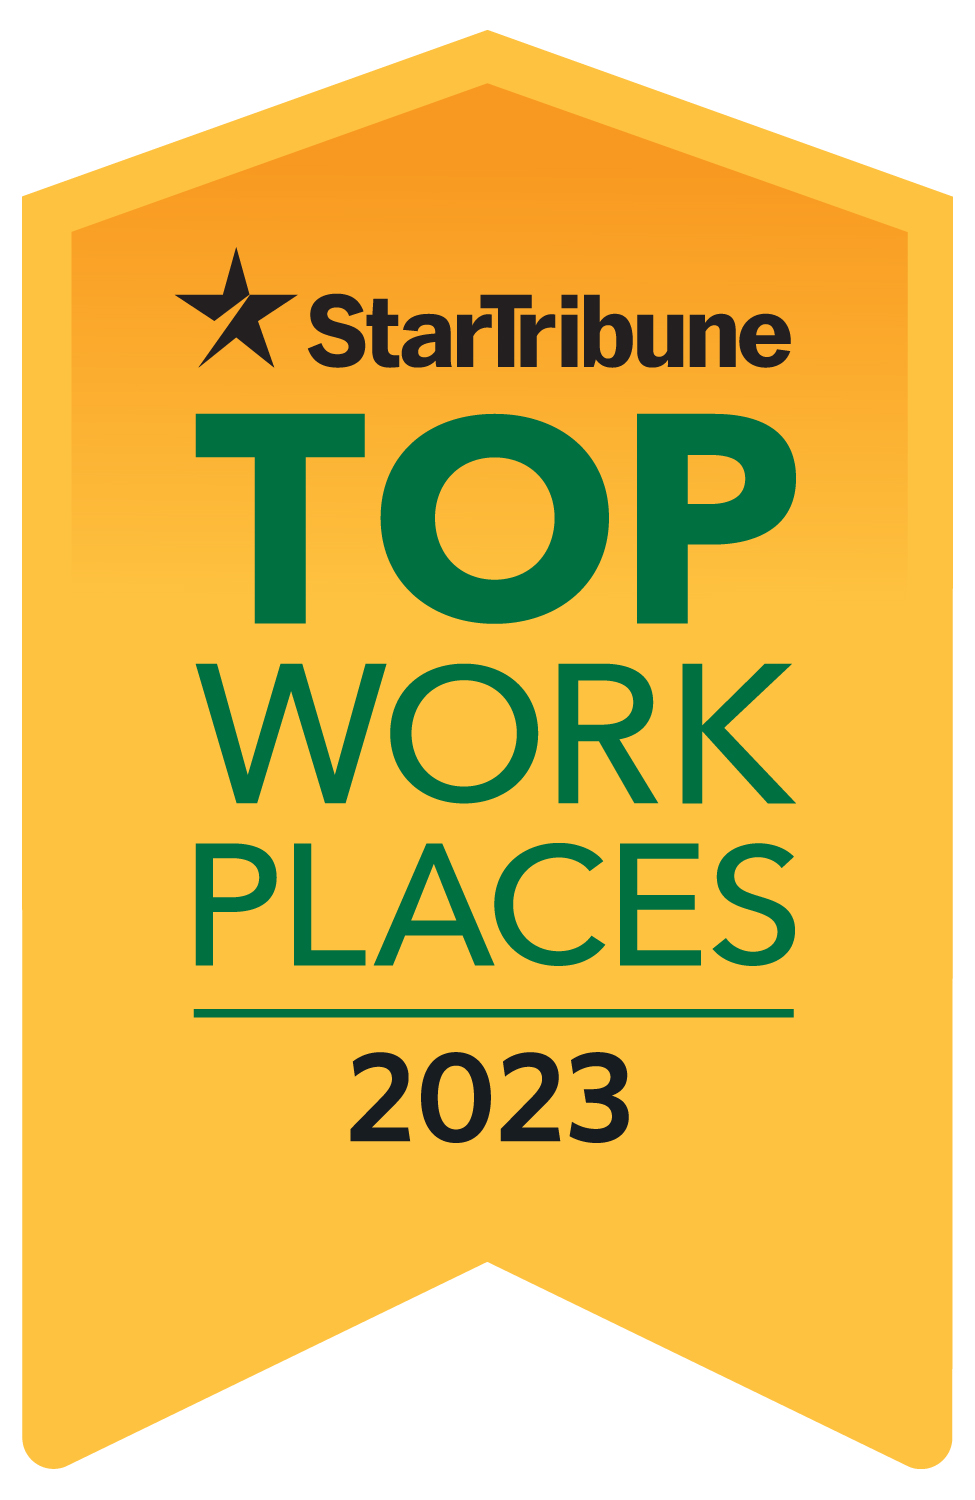 2023 Star Tribune Top Workplace